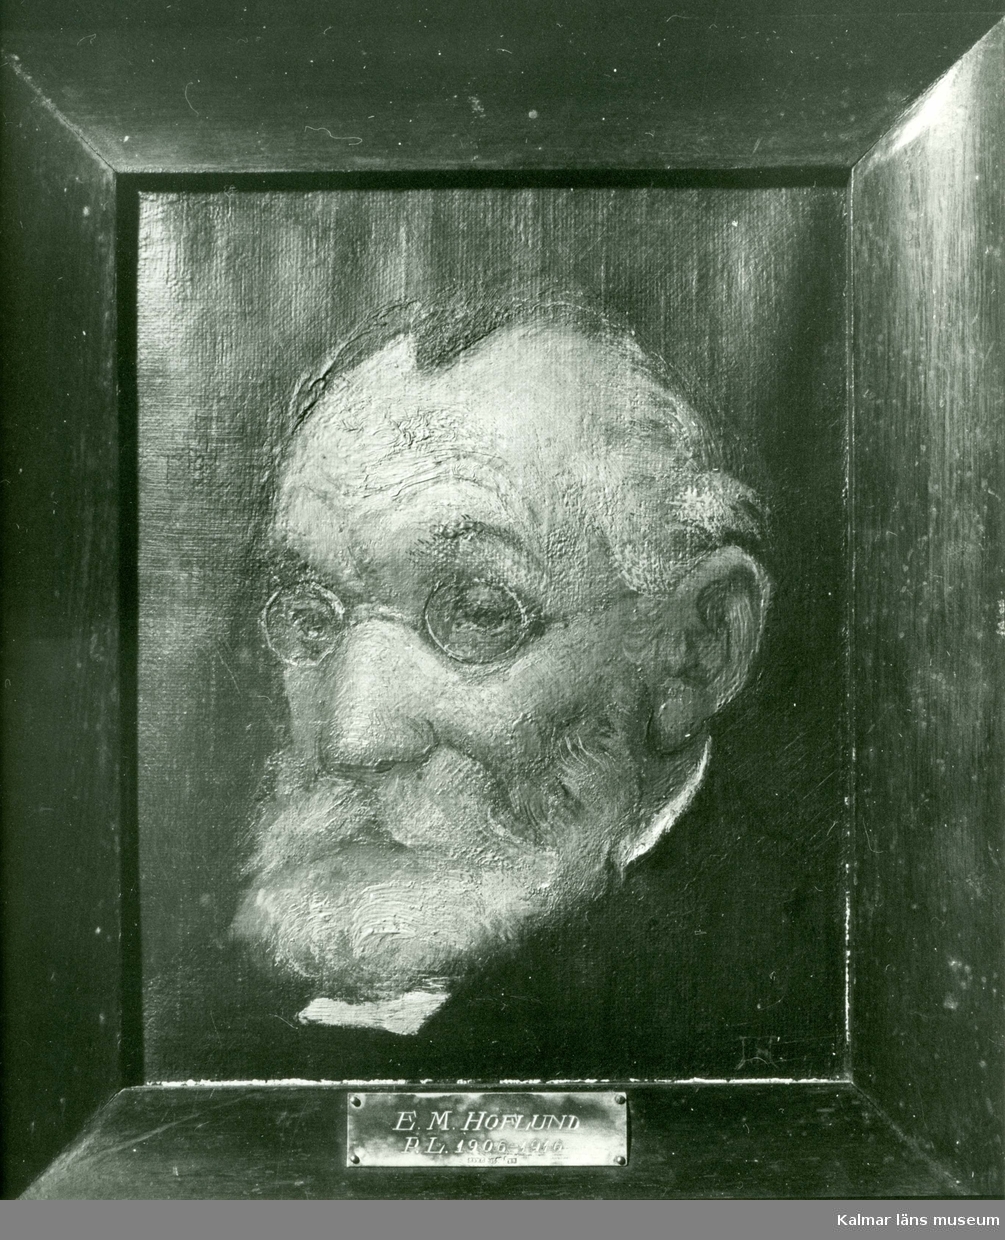 Porträtt av prästen E M Hoflund, målat av hans son, Ivan Hoflund.
Målningen är utförd under 1900-talets första hälft.